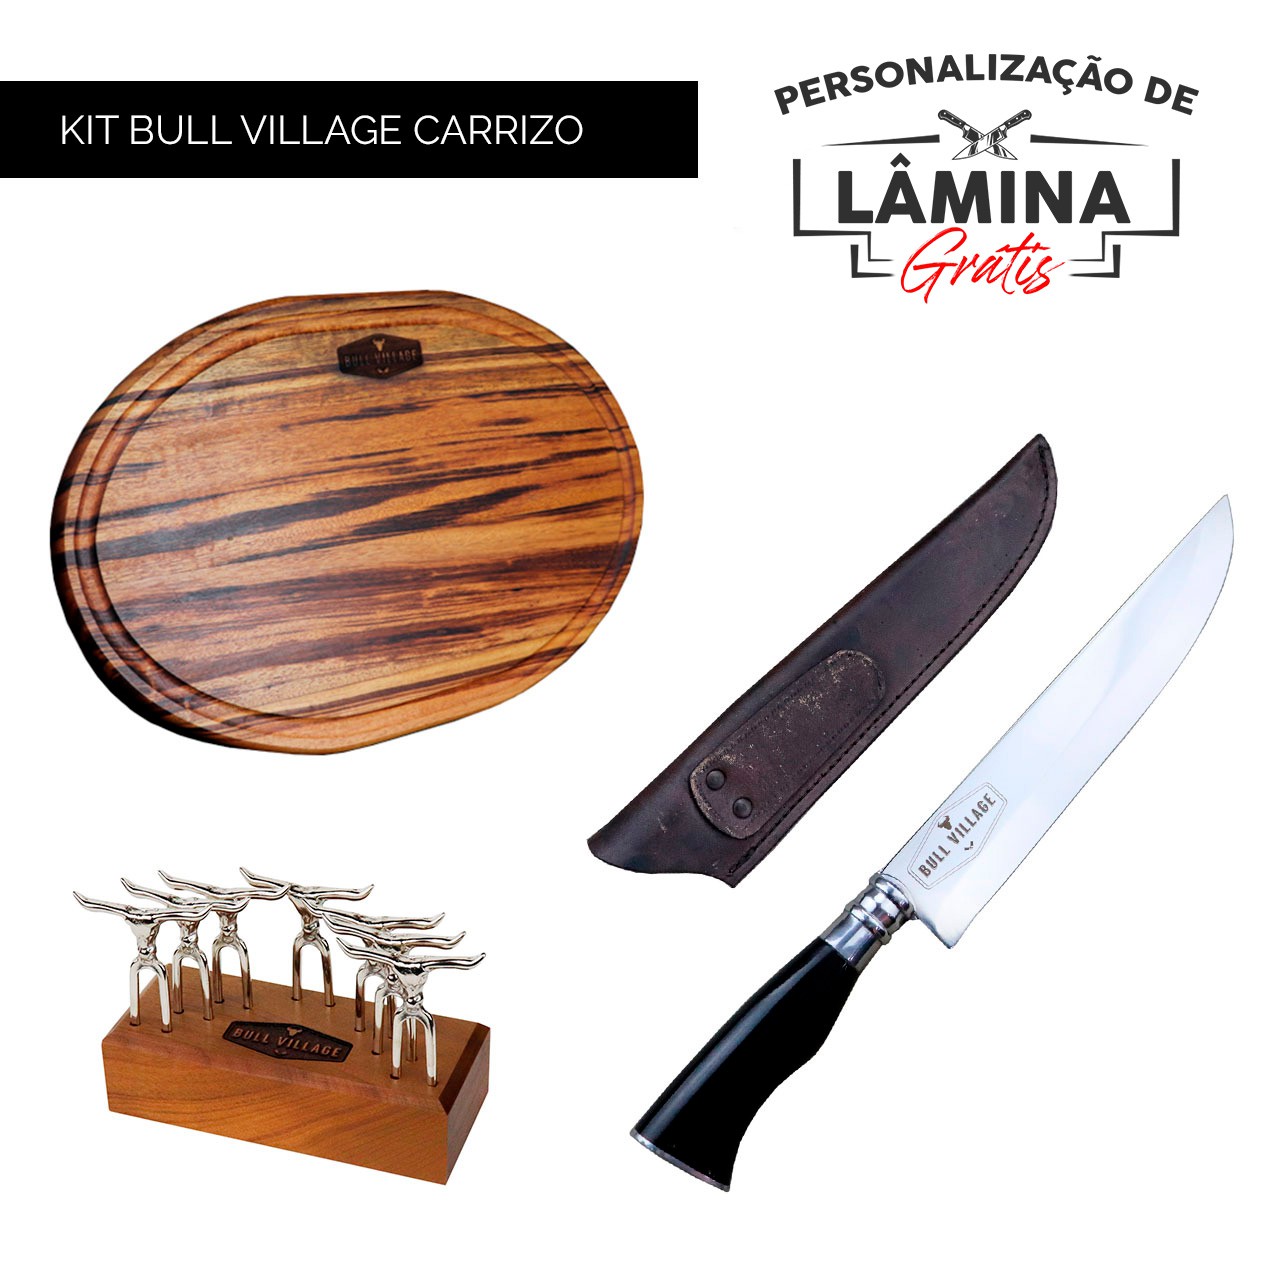 Kit Bull Village Carrizo - Personalização Grátis - Leia a descrição!